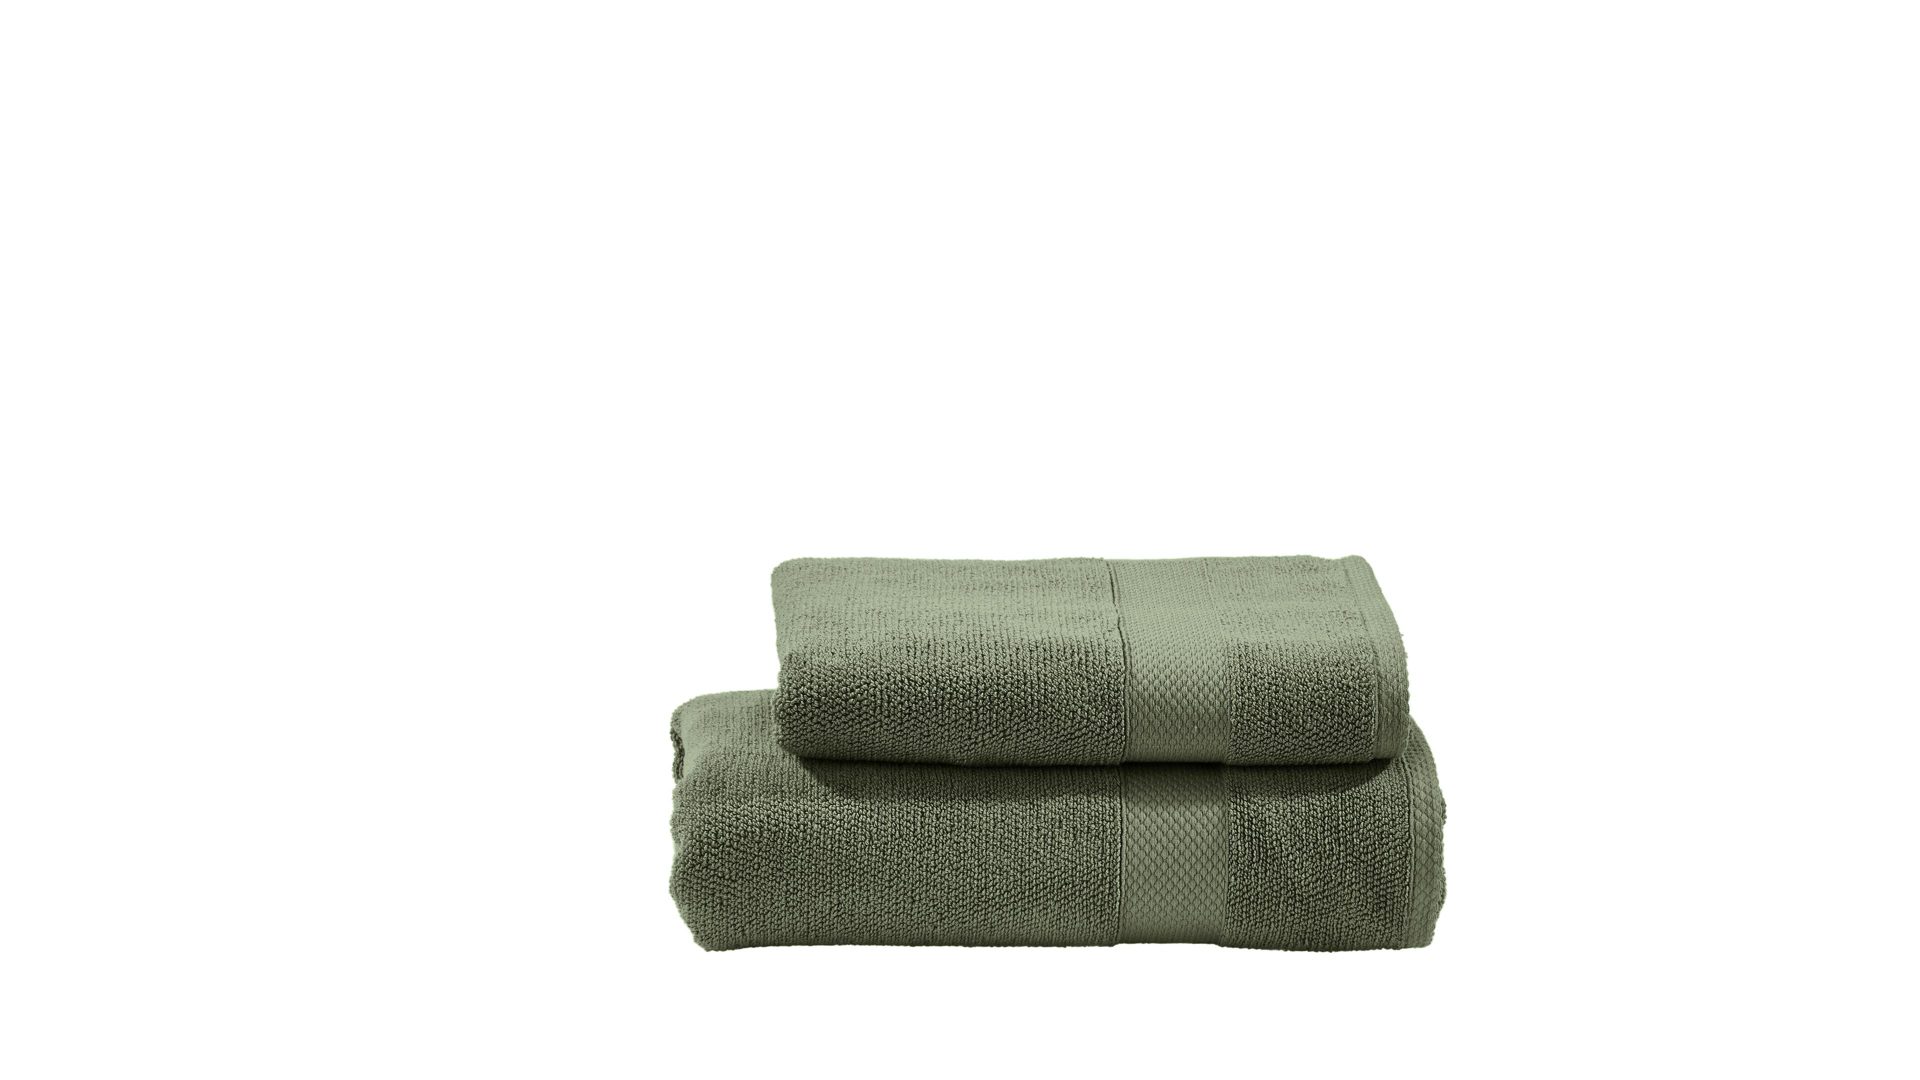 Handtuch-Set Done® by karabel home company aus Stoff in Dunkelgrün DONE® Handtuch-Set Deluxe für Ihre Heimtextilien khakifarbene Baumwolle – zweiteilig